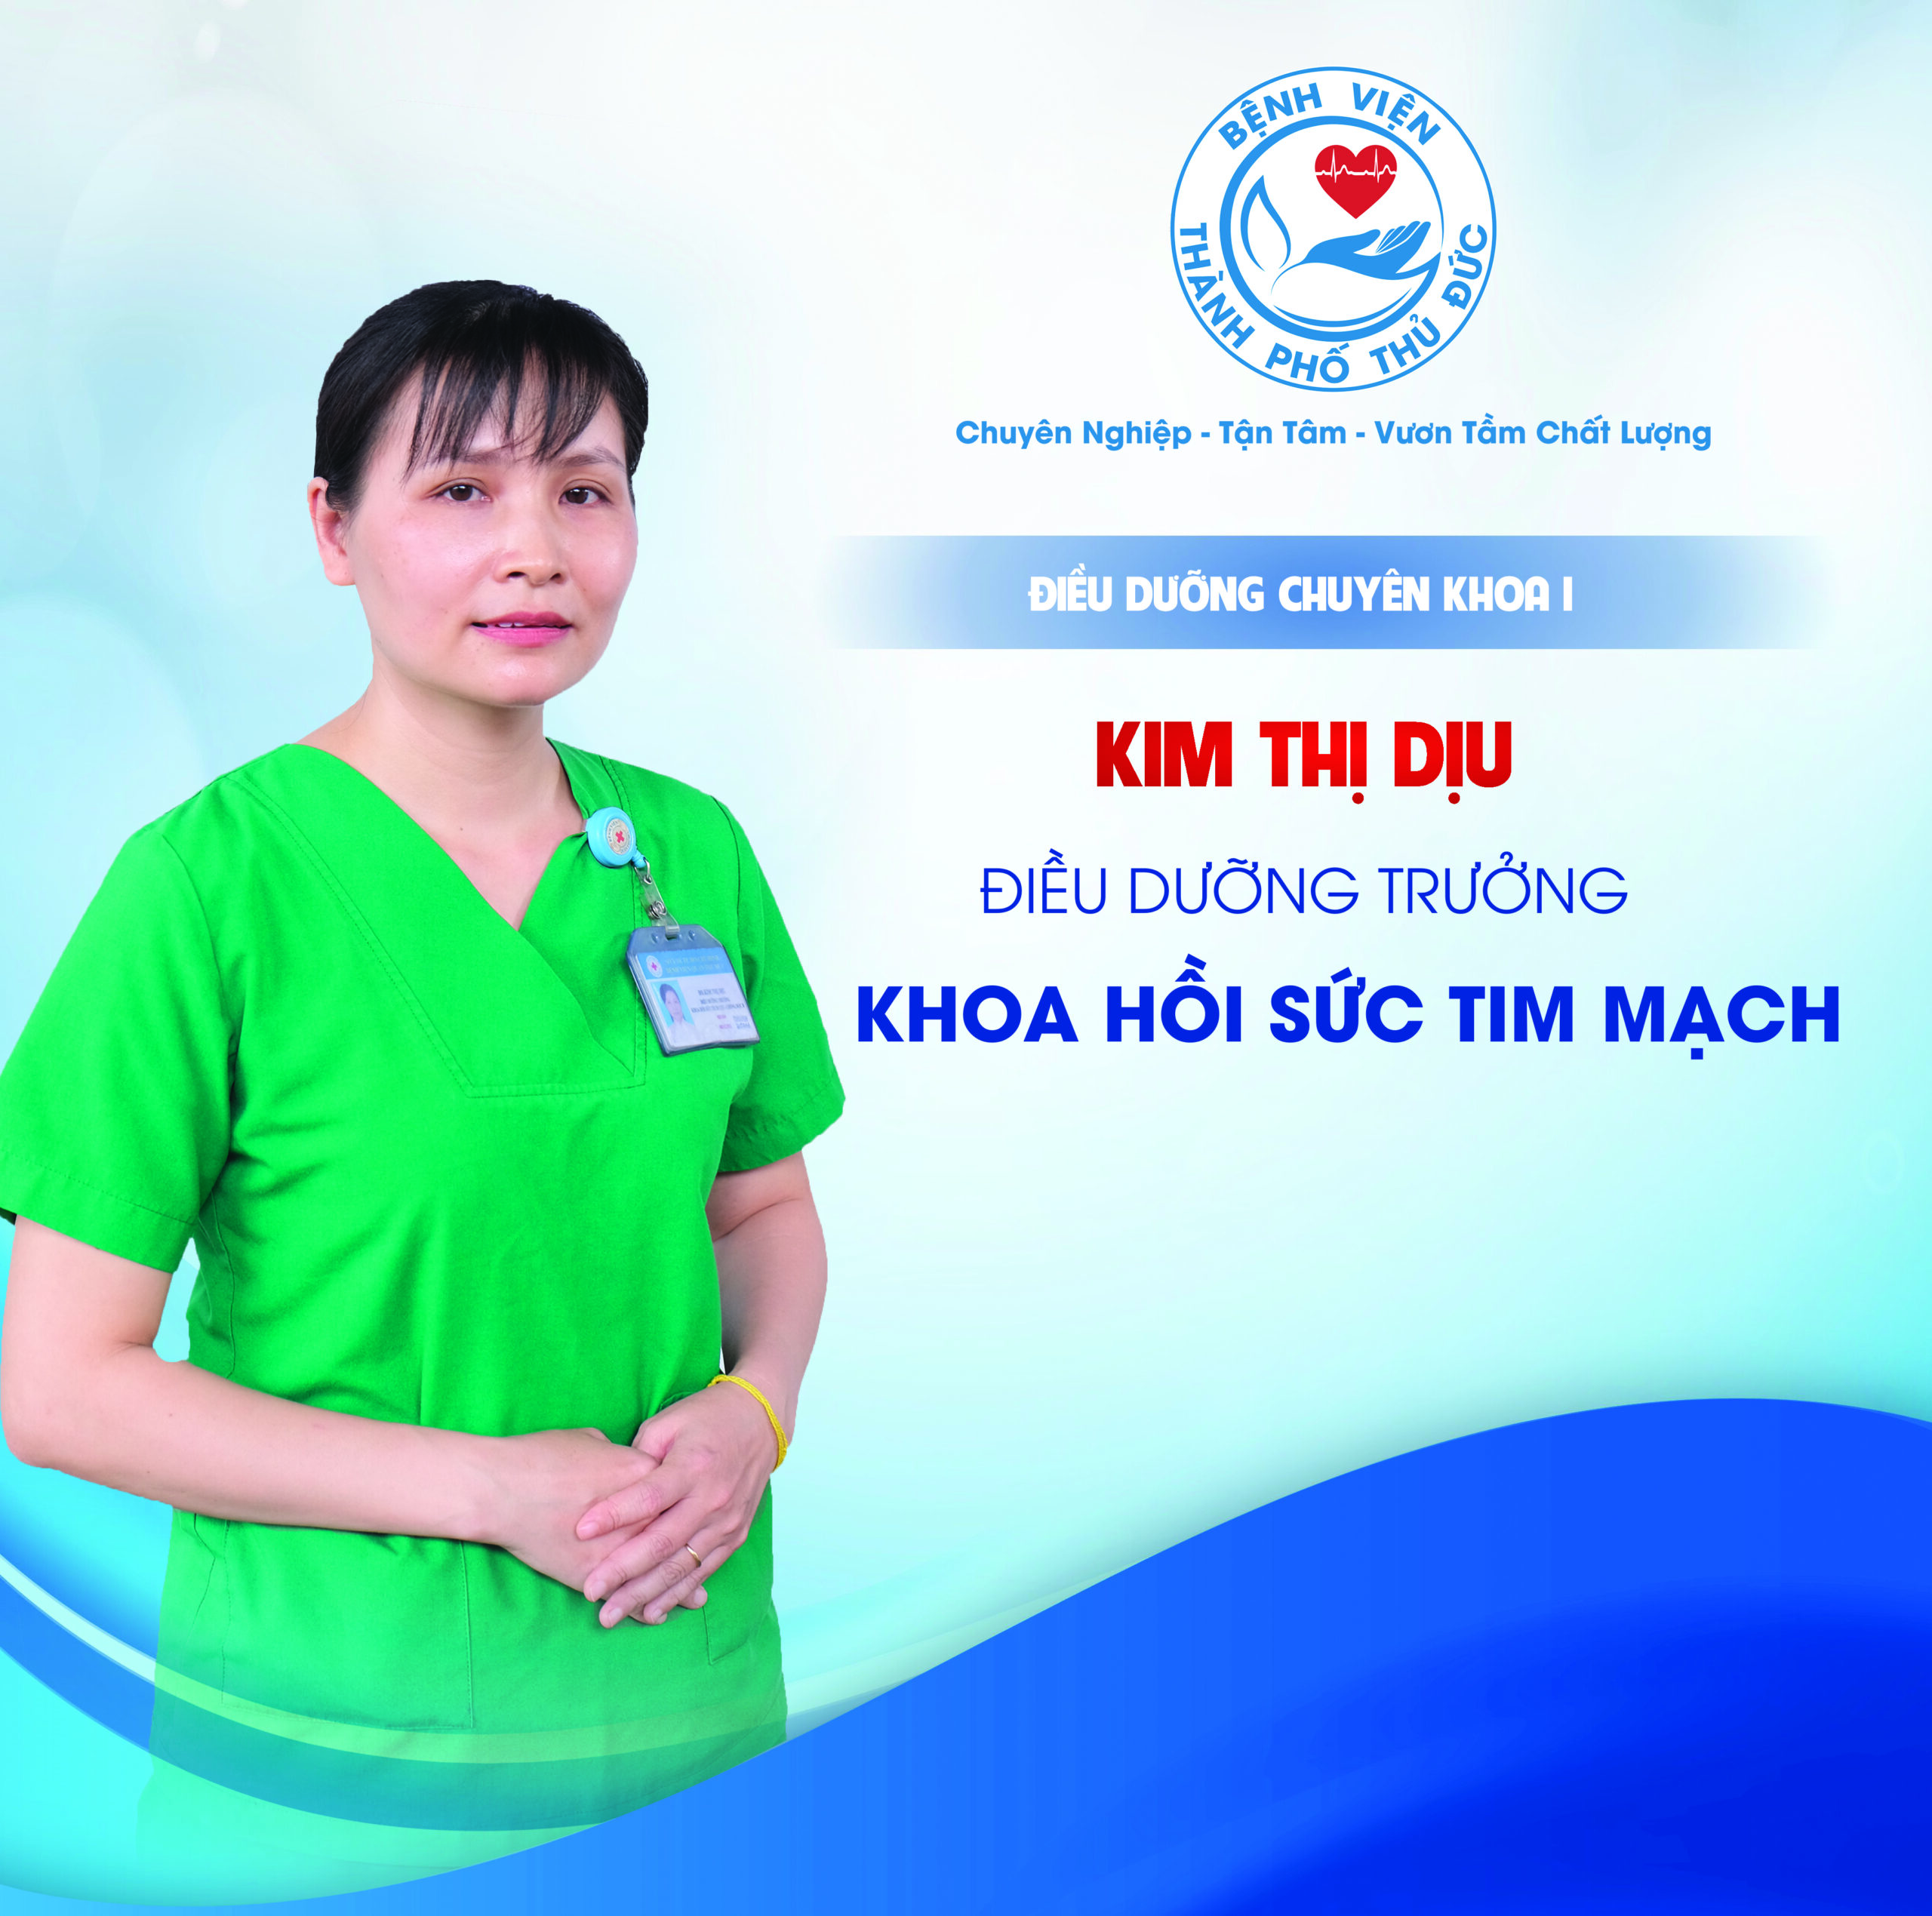 ĐDCKI Kim Thị Dịu - Điều dưỡng Trưởng khoa Hồi sức tim mạch